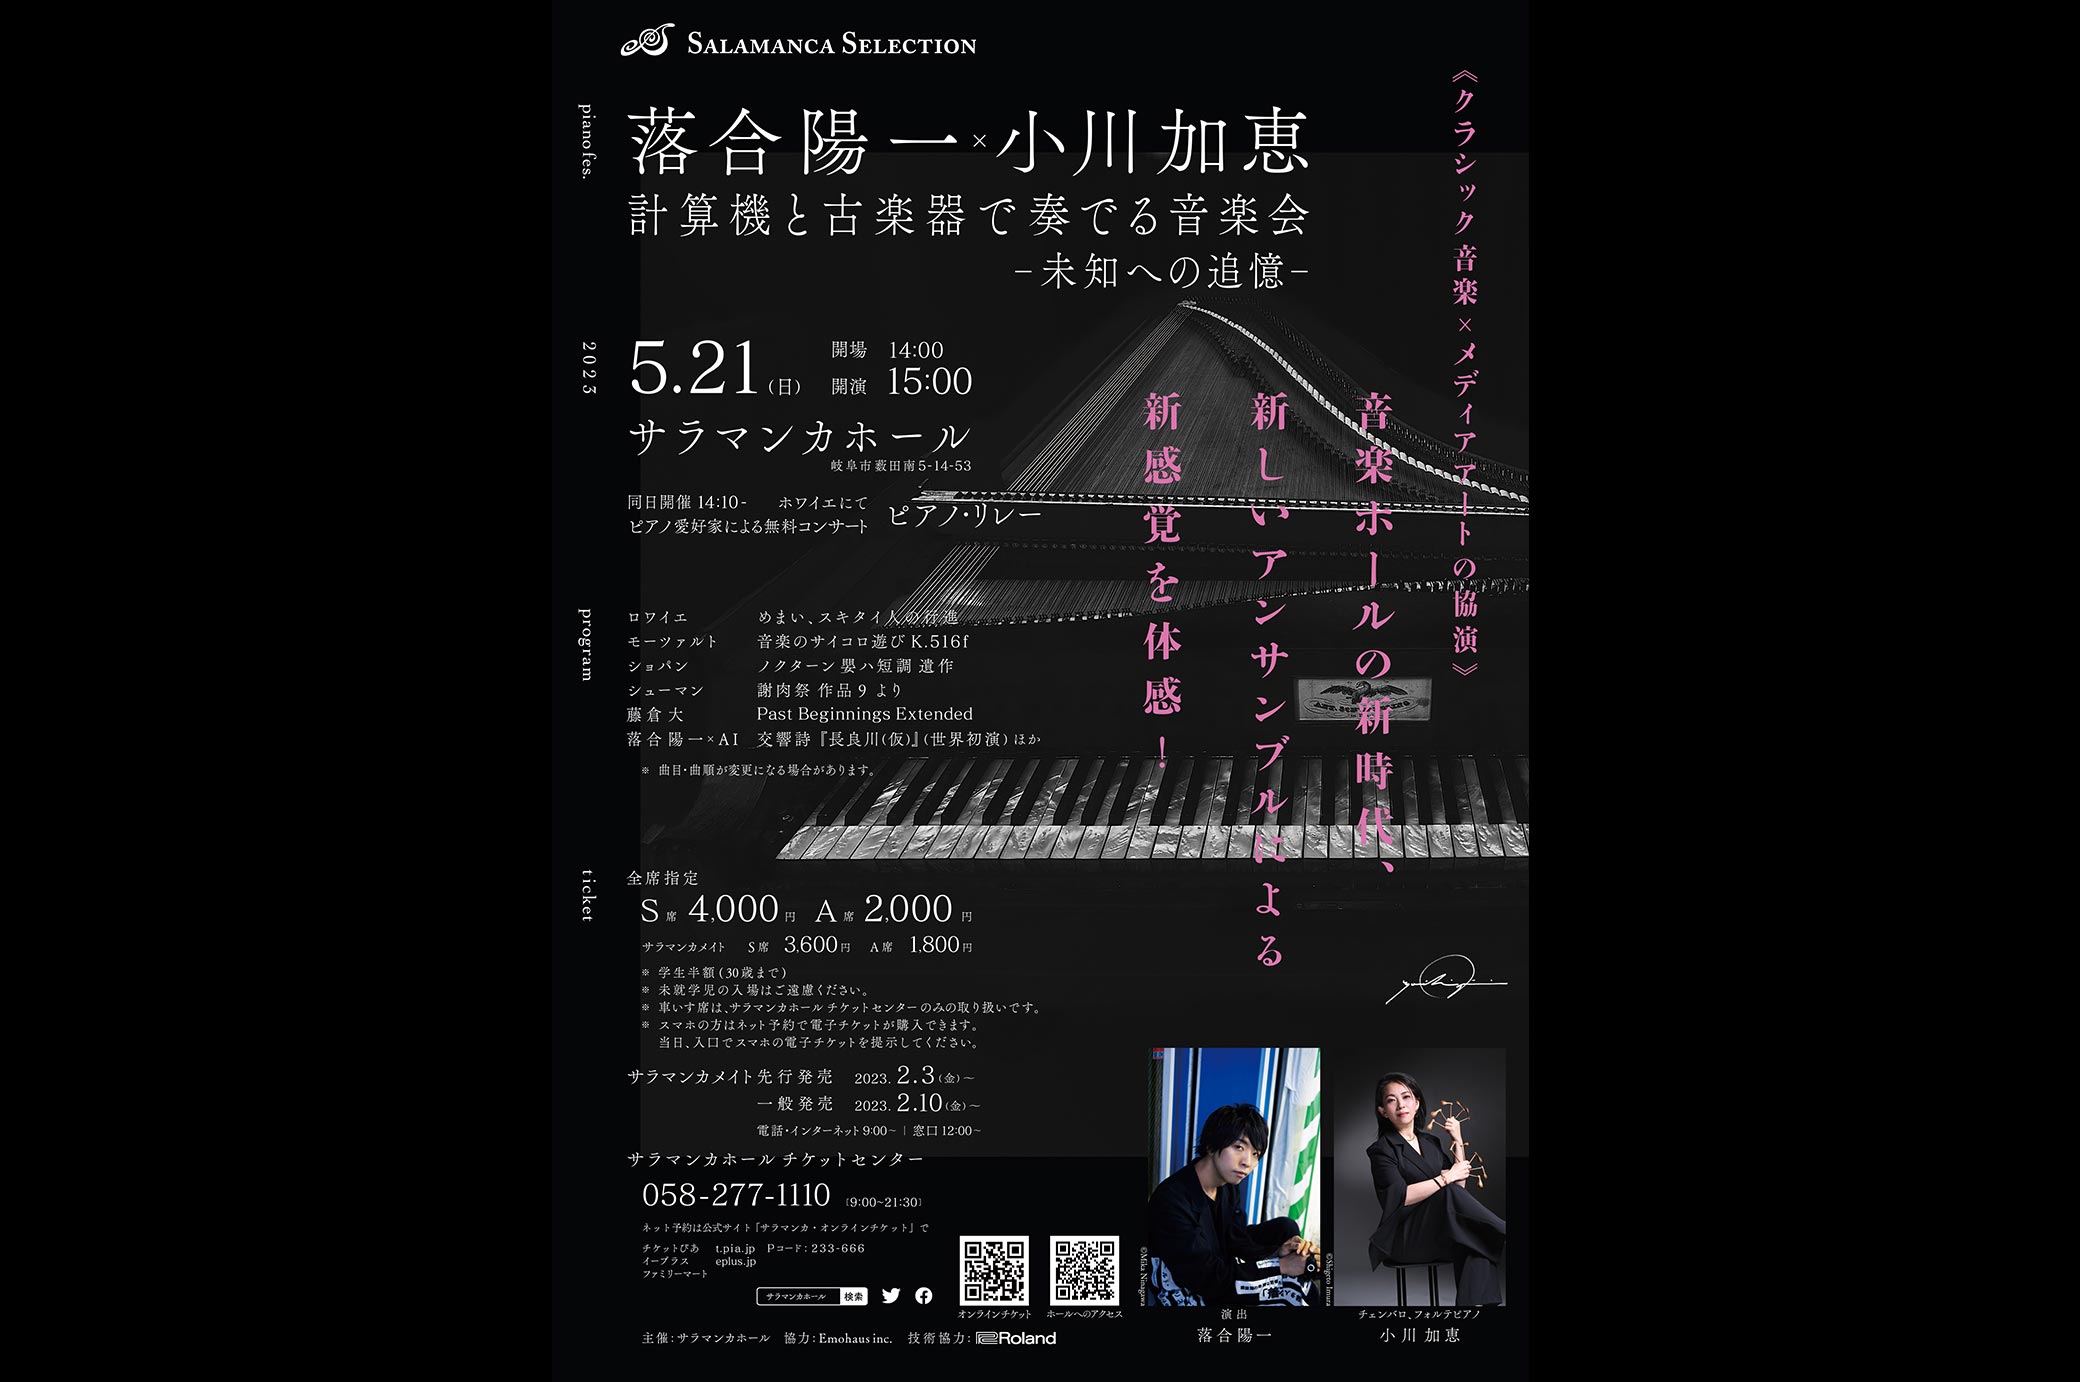 ピアノフェス 落合陽一×小川加恵 計算機と古楽器で奏でる音楽会 未知への追憶のキービジュアルです